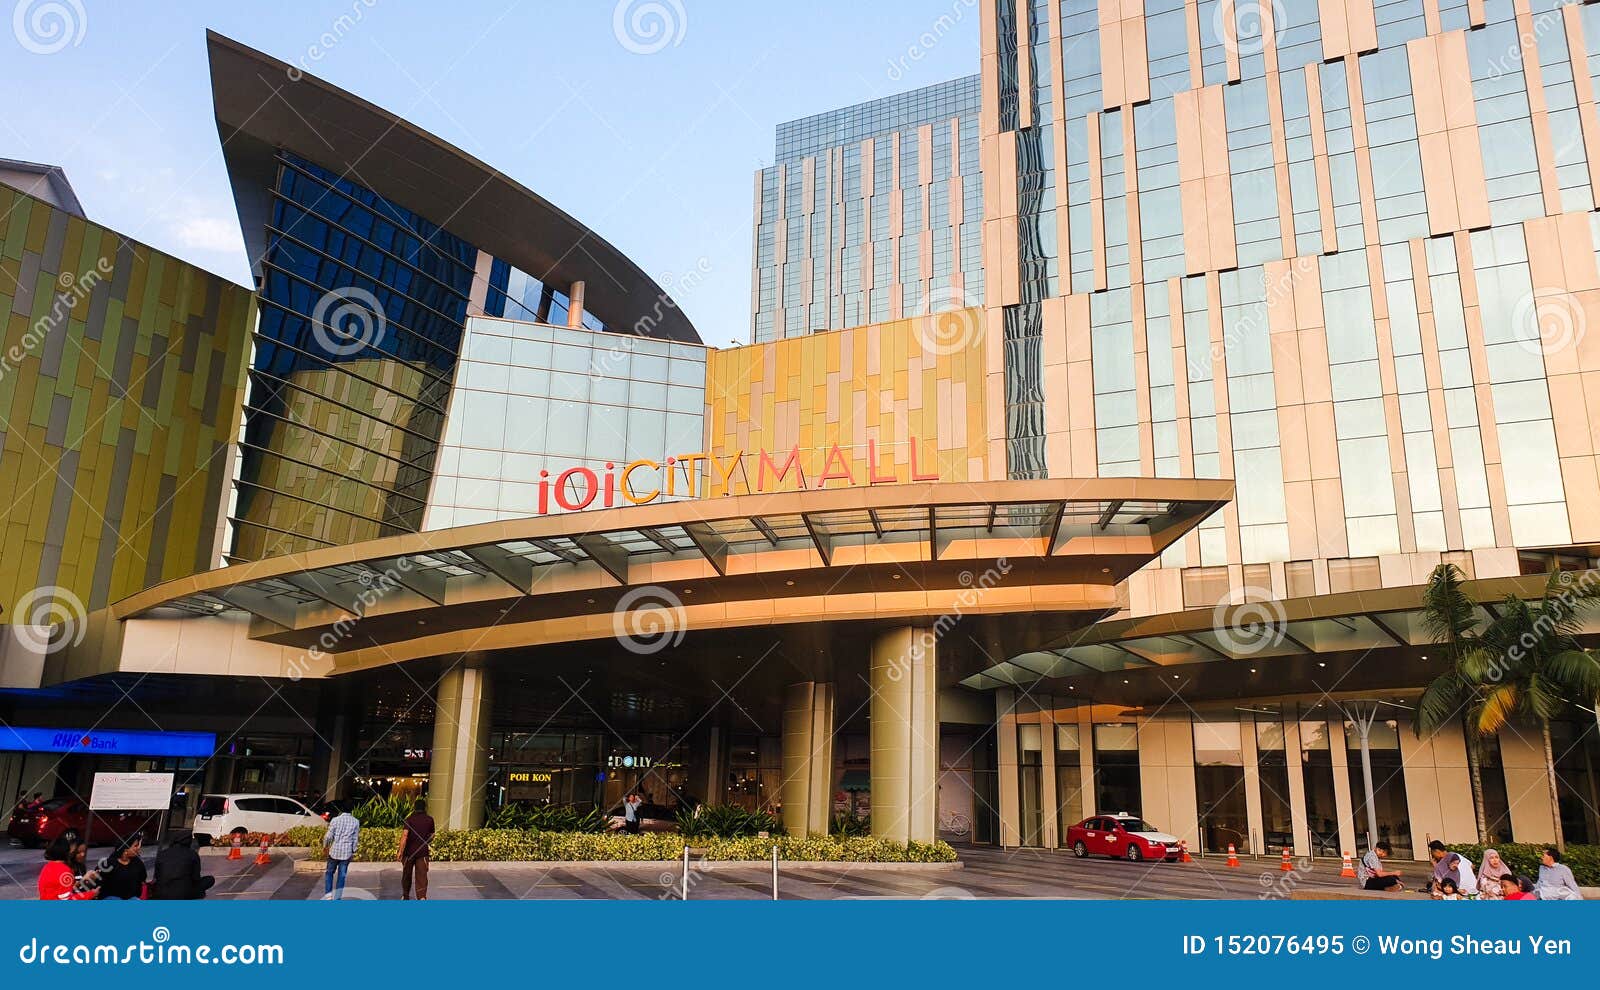 The Grand Main Entrance Of The IOI City Mall, Putrajaya, Malaysia